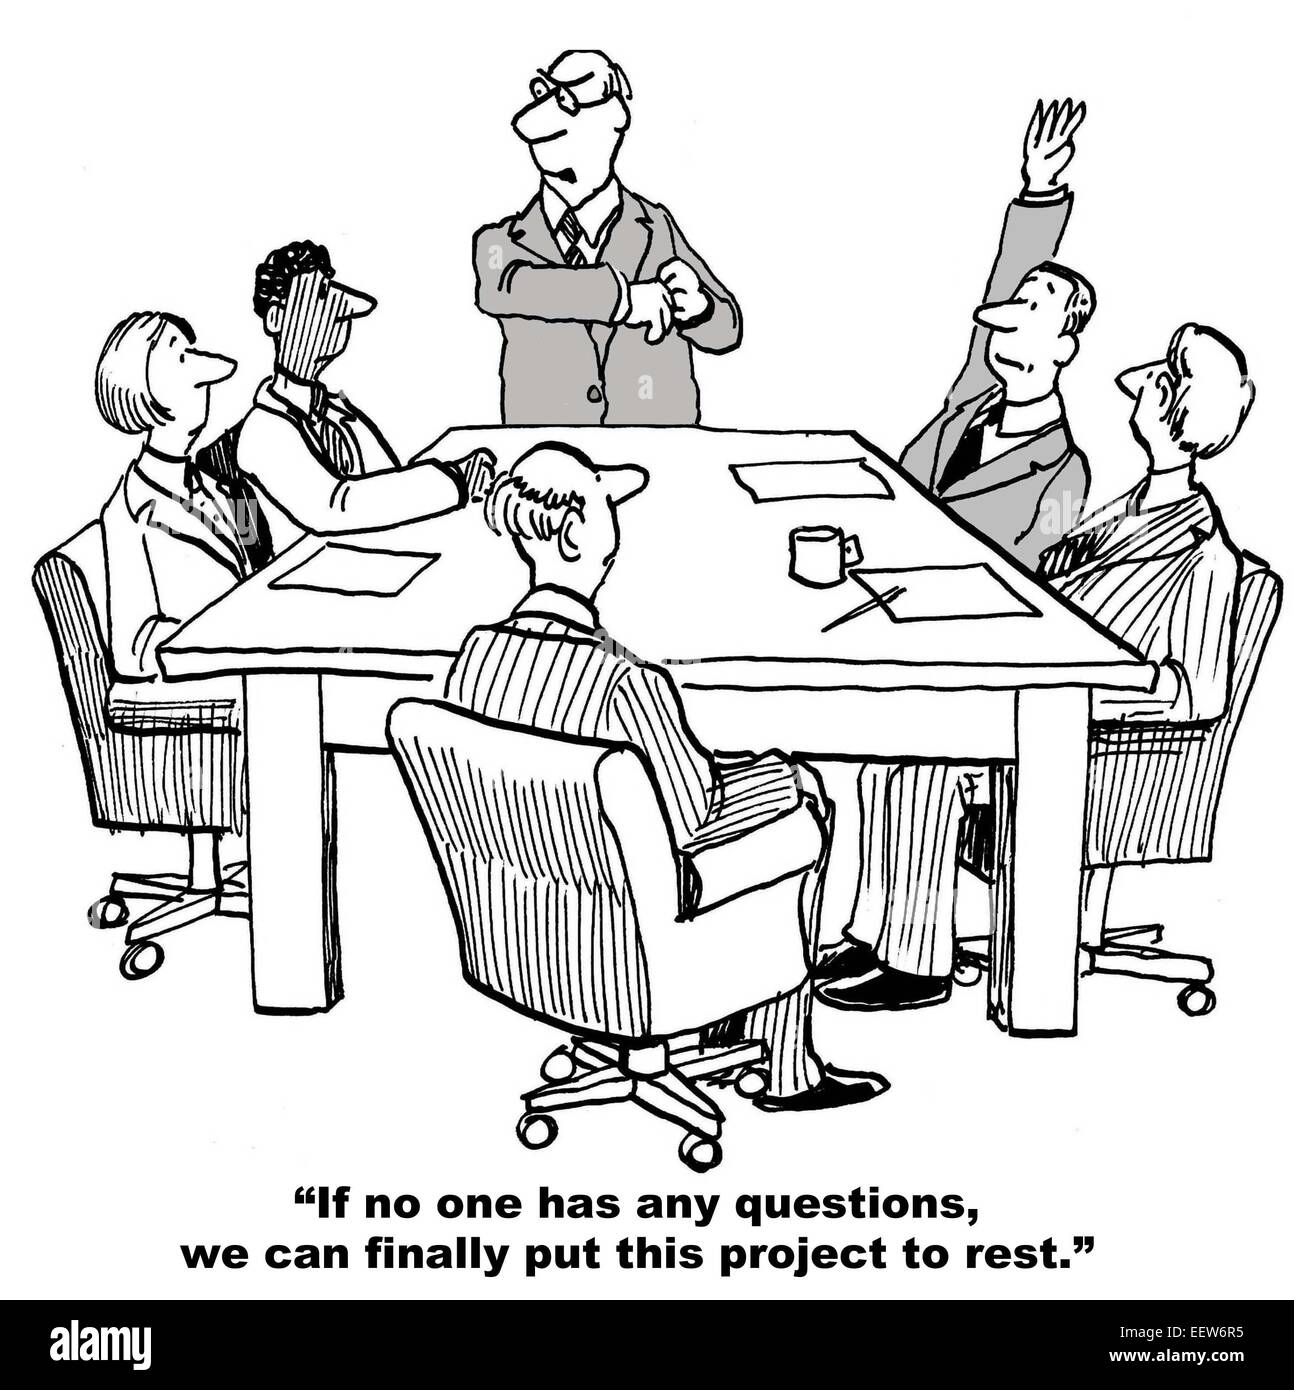 Cartoon von Business-Team am letzten Tag des Projektes, Führer sagt endlich Projekt zur Ruhe setzen können, aber es gibt noch eine Frage. Stockfoto